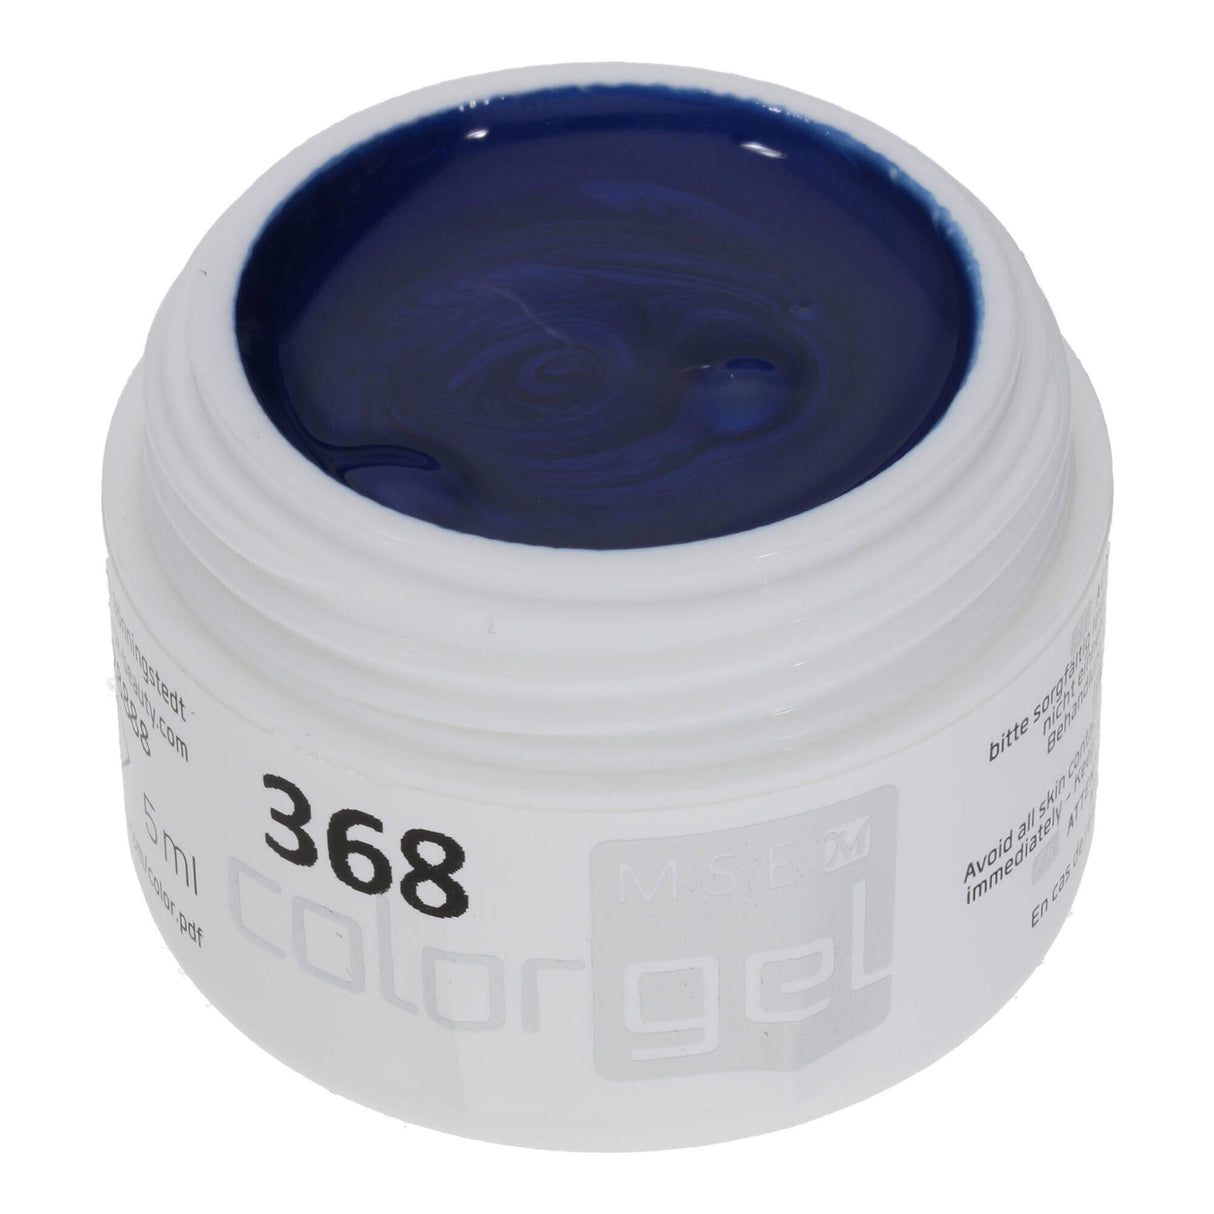 # 368 Premium EFFECT Color Gel 5ml Dark blue with a subtle shimmer